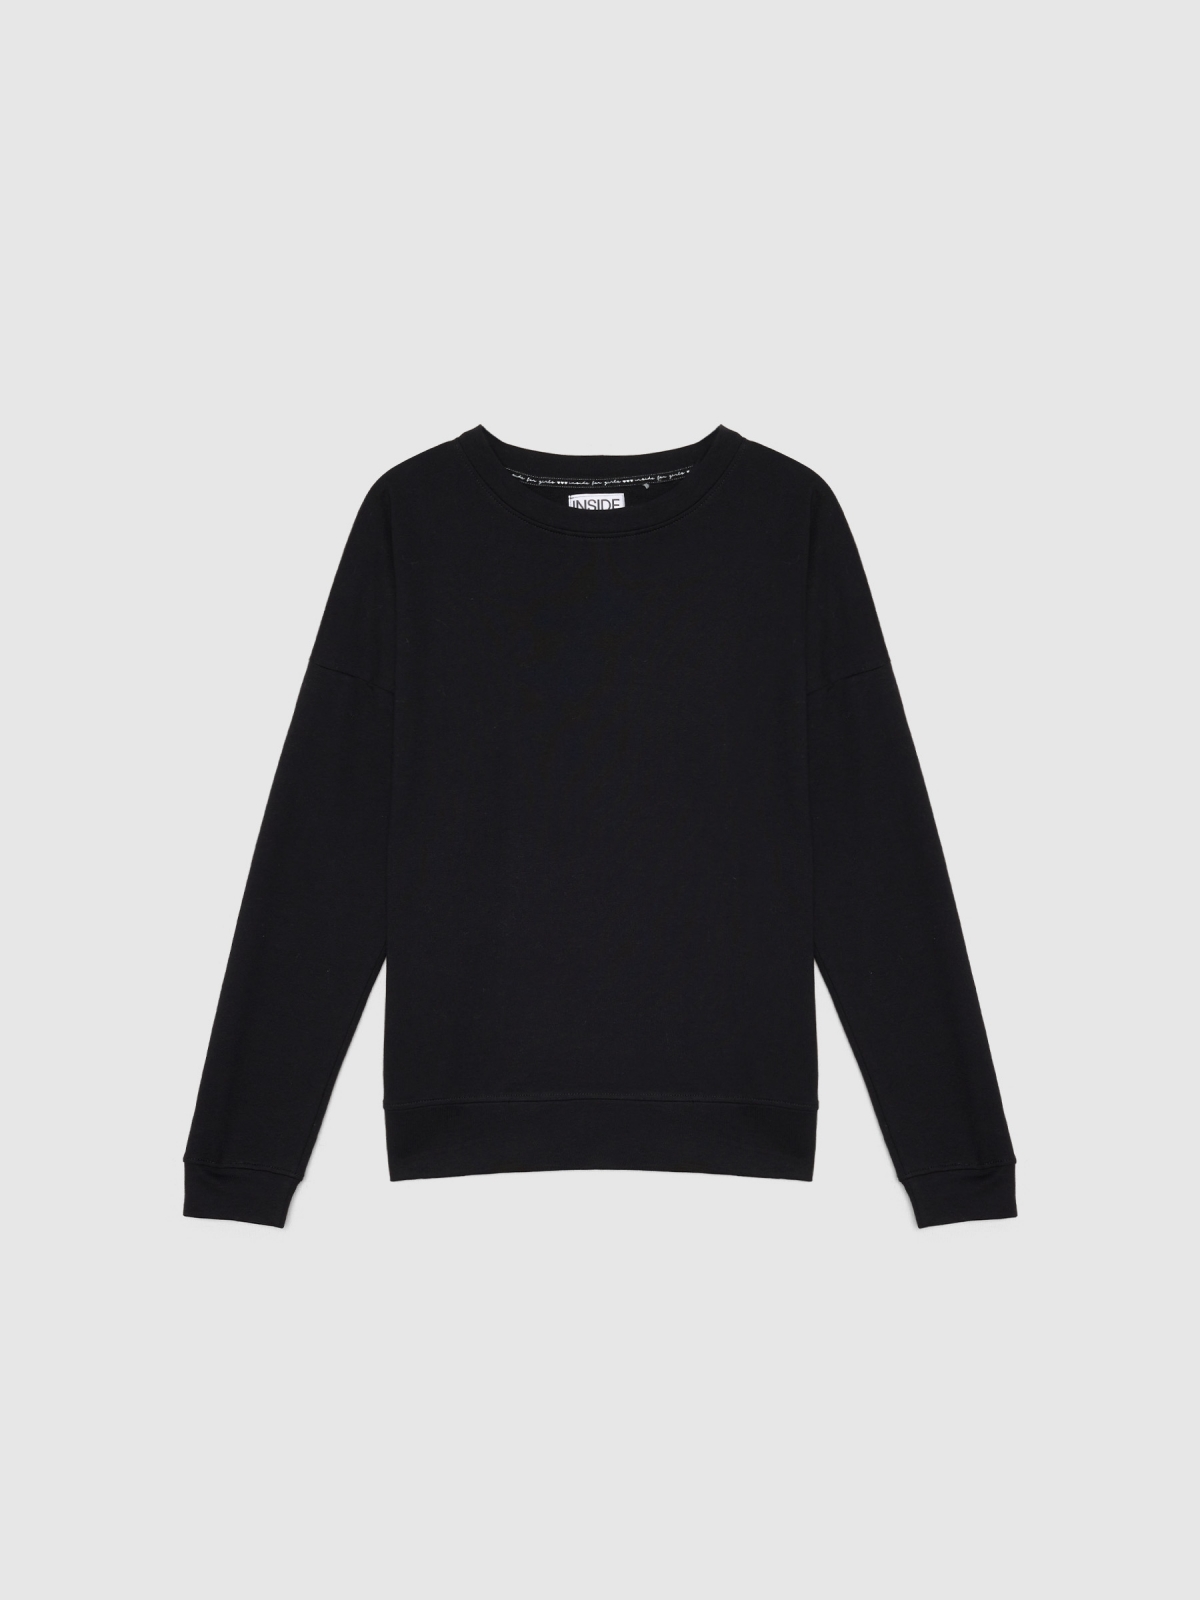  Sweatshirt básica preto